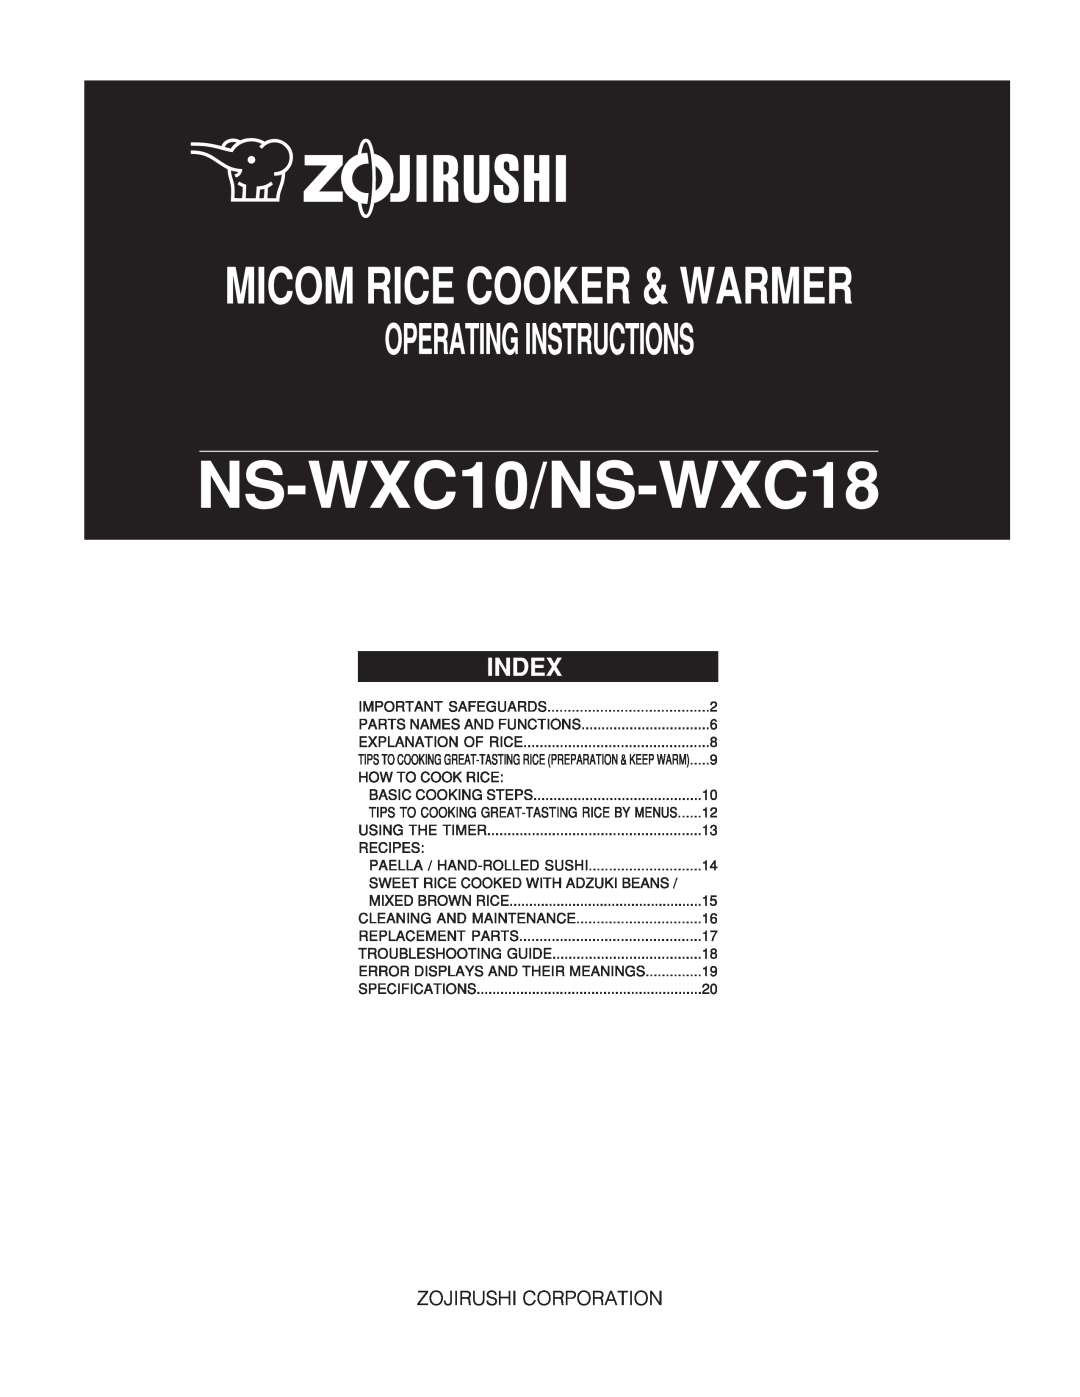 Zojirushi NS-WXC10, NS-WXC18 manual 